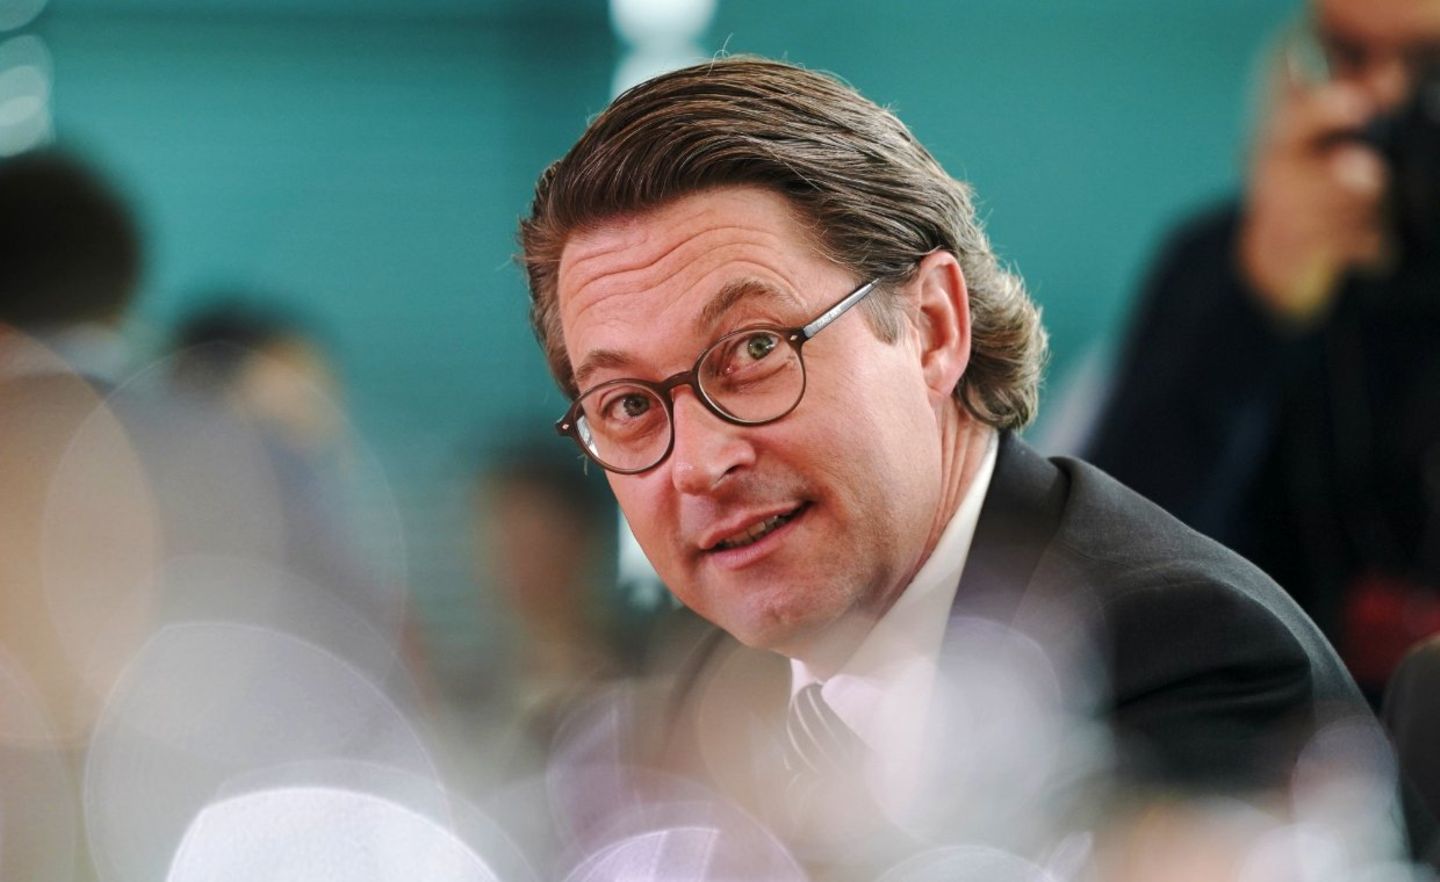 Verkehrsminister Andreas Scheuer wollte den Milliardenvertrag für die Pkw-Maut unbedingt 2018 abschließen. Nun kämpft er um sein Amt – mit allen Mitteln